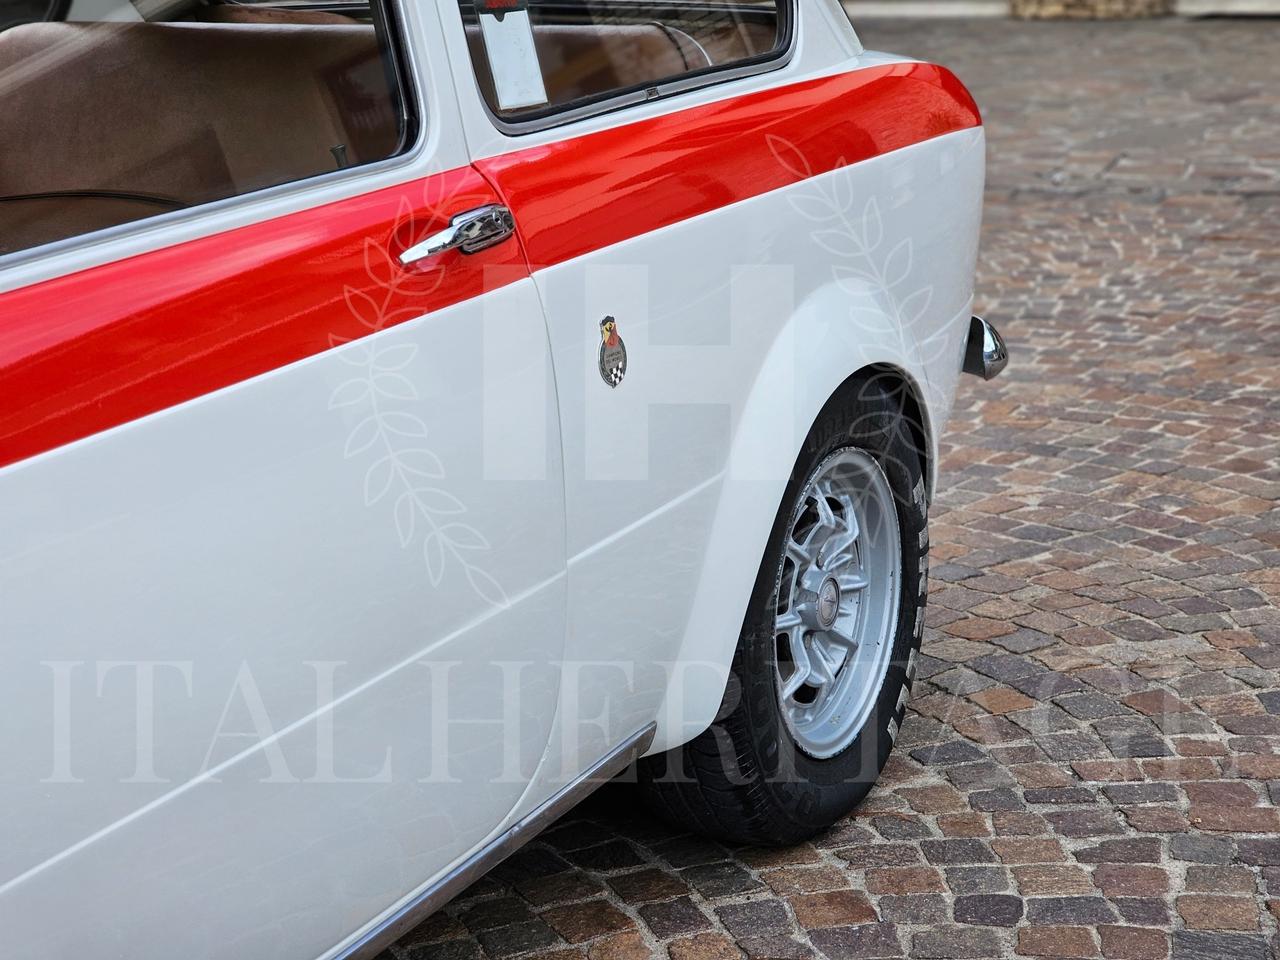 Fiat Altro Fiat Abarth 1000 OT Berlinetta